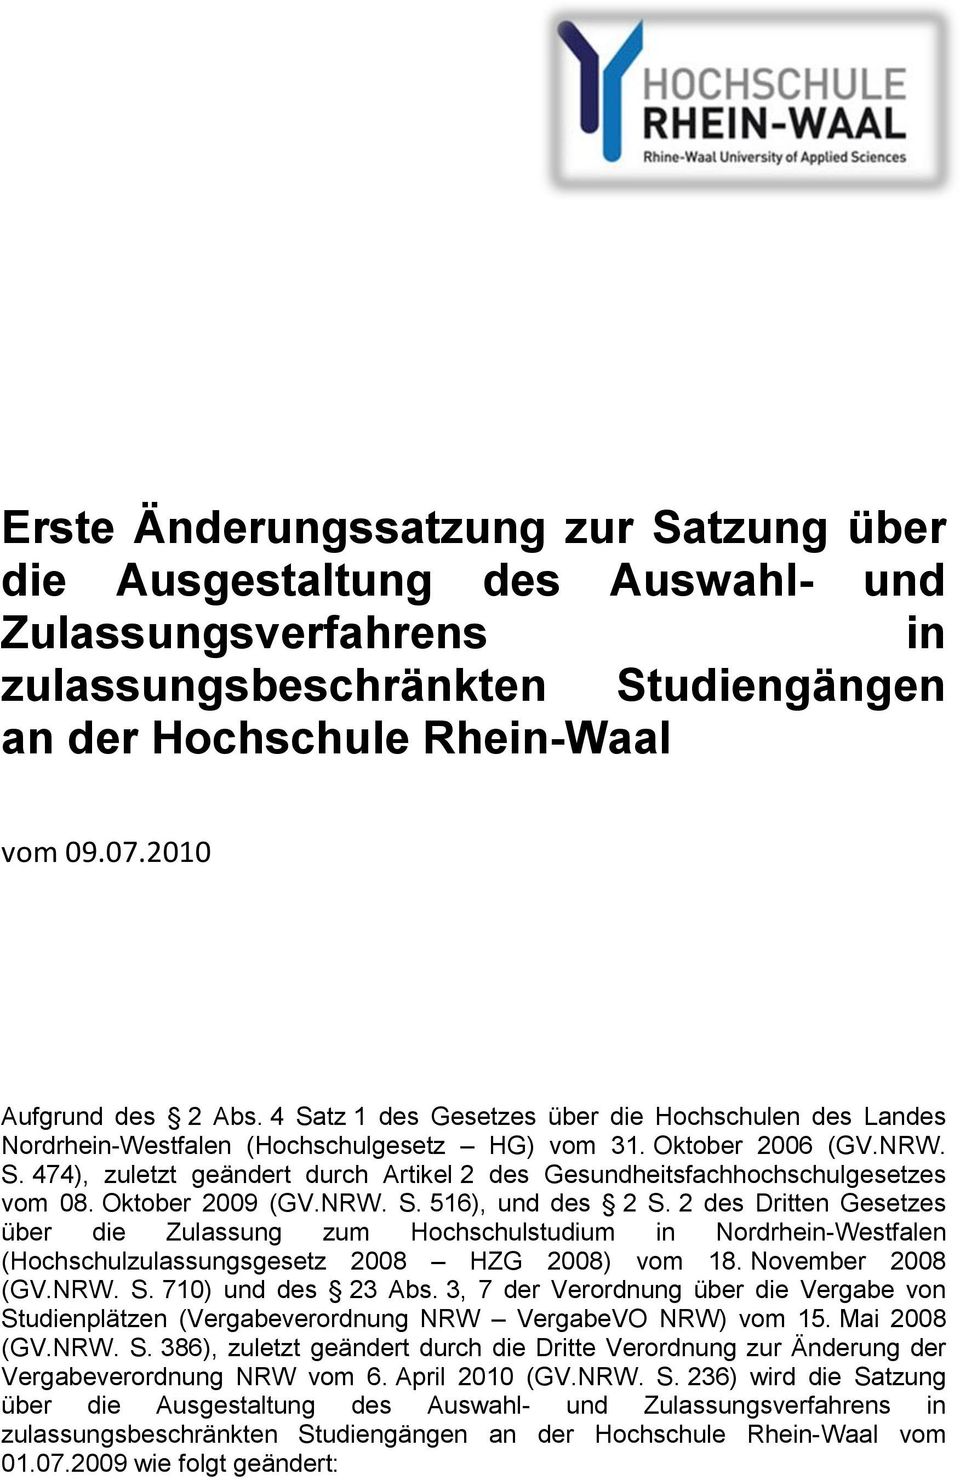 Oktober 2009 (GV.NRW. S. 516), und des 2 S. 2 des Dritten Gesetzes über die Zulassung zum Hochschulstudium in Nordrhein-Westfalen (Hochschulzulassungsgesetz 2008 HZG 2008) vom 18. November 2008 (GV.